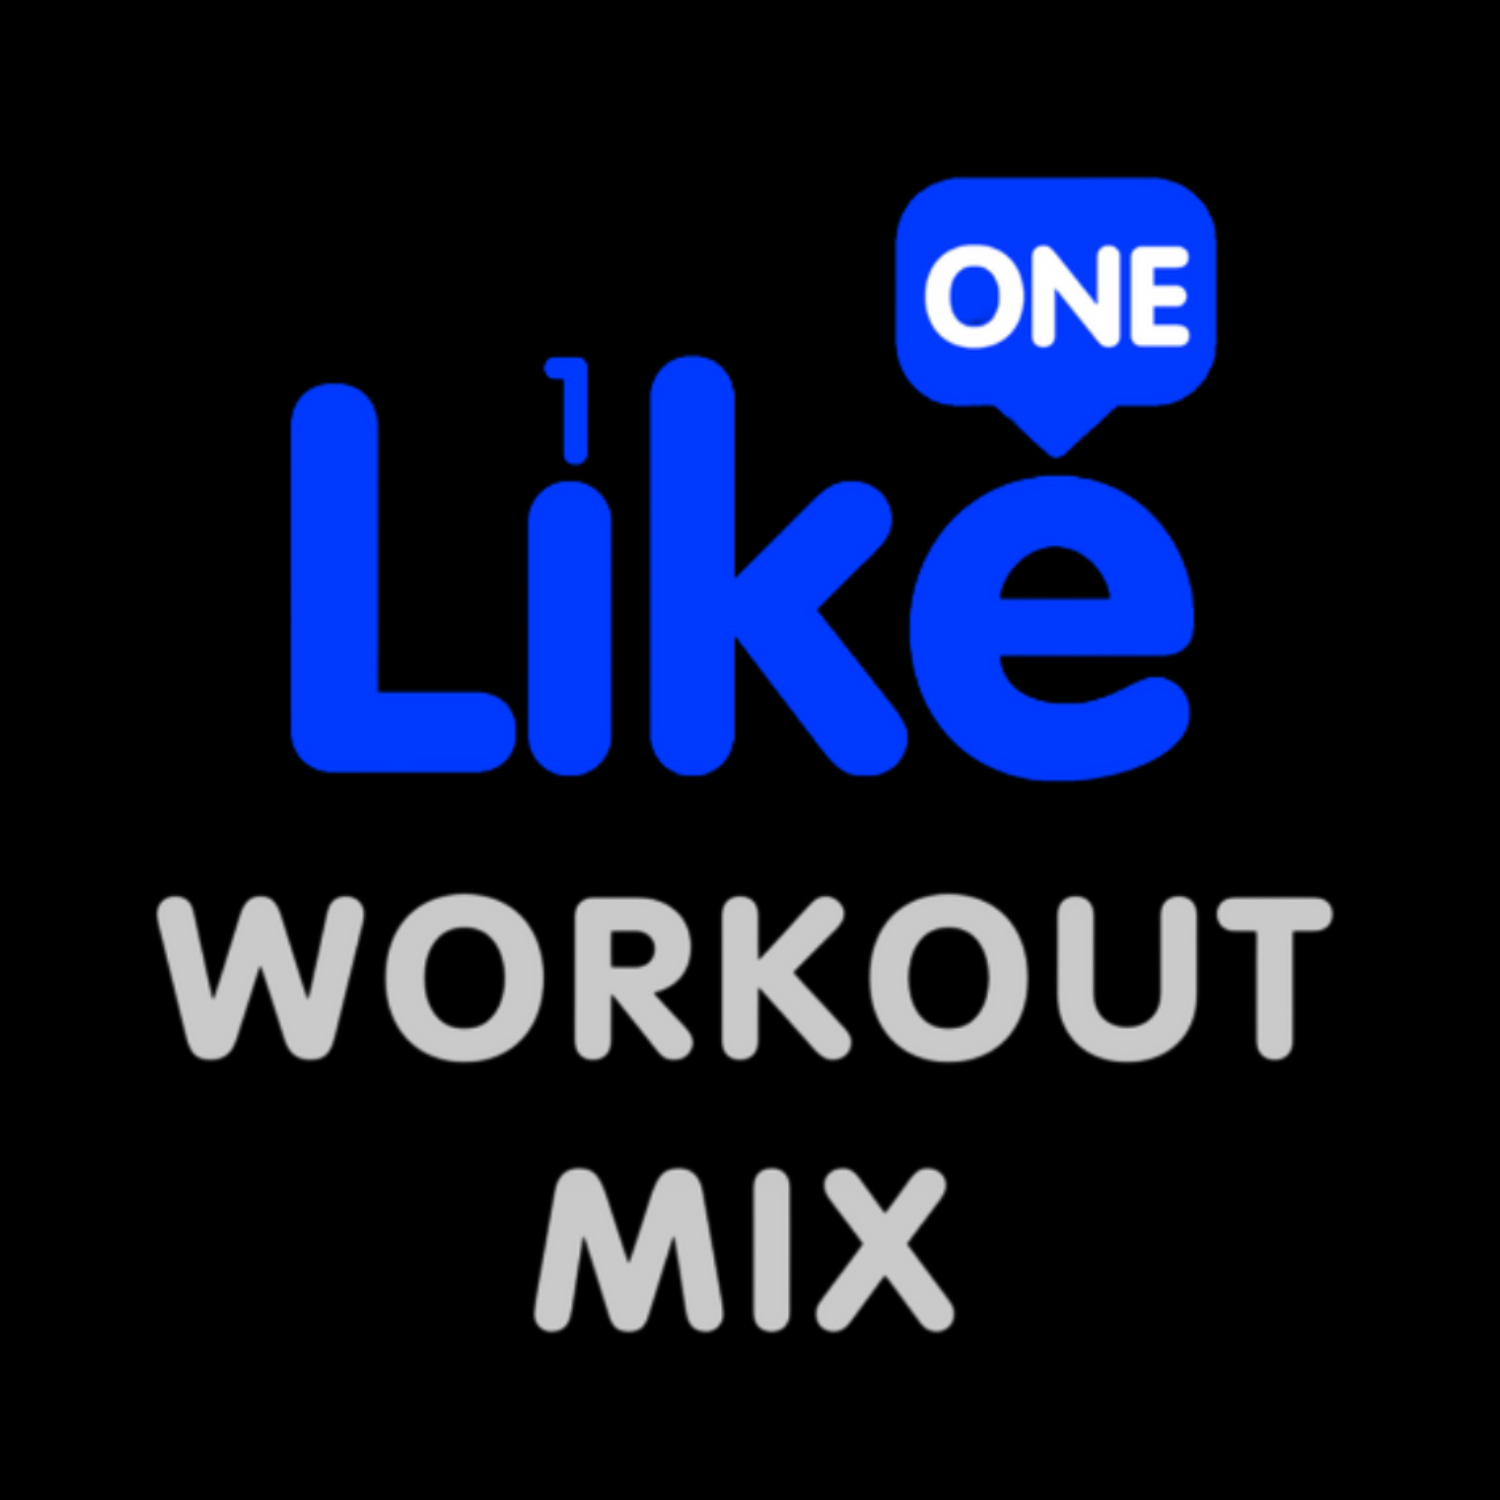 Like One Workout Mix 089